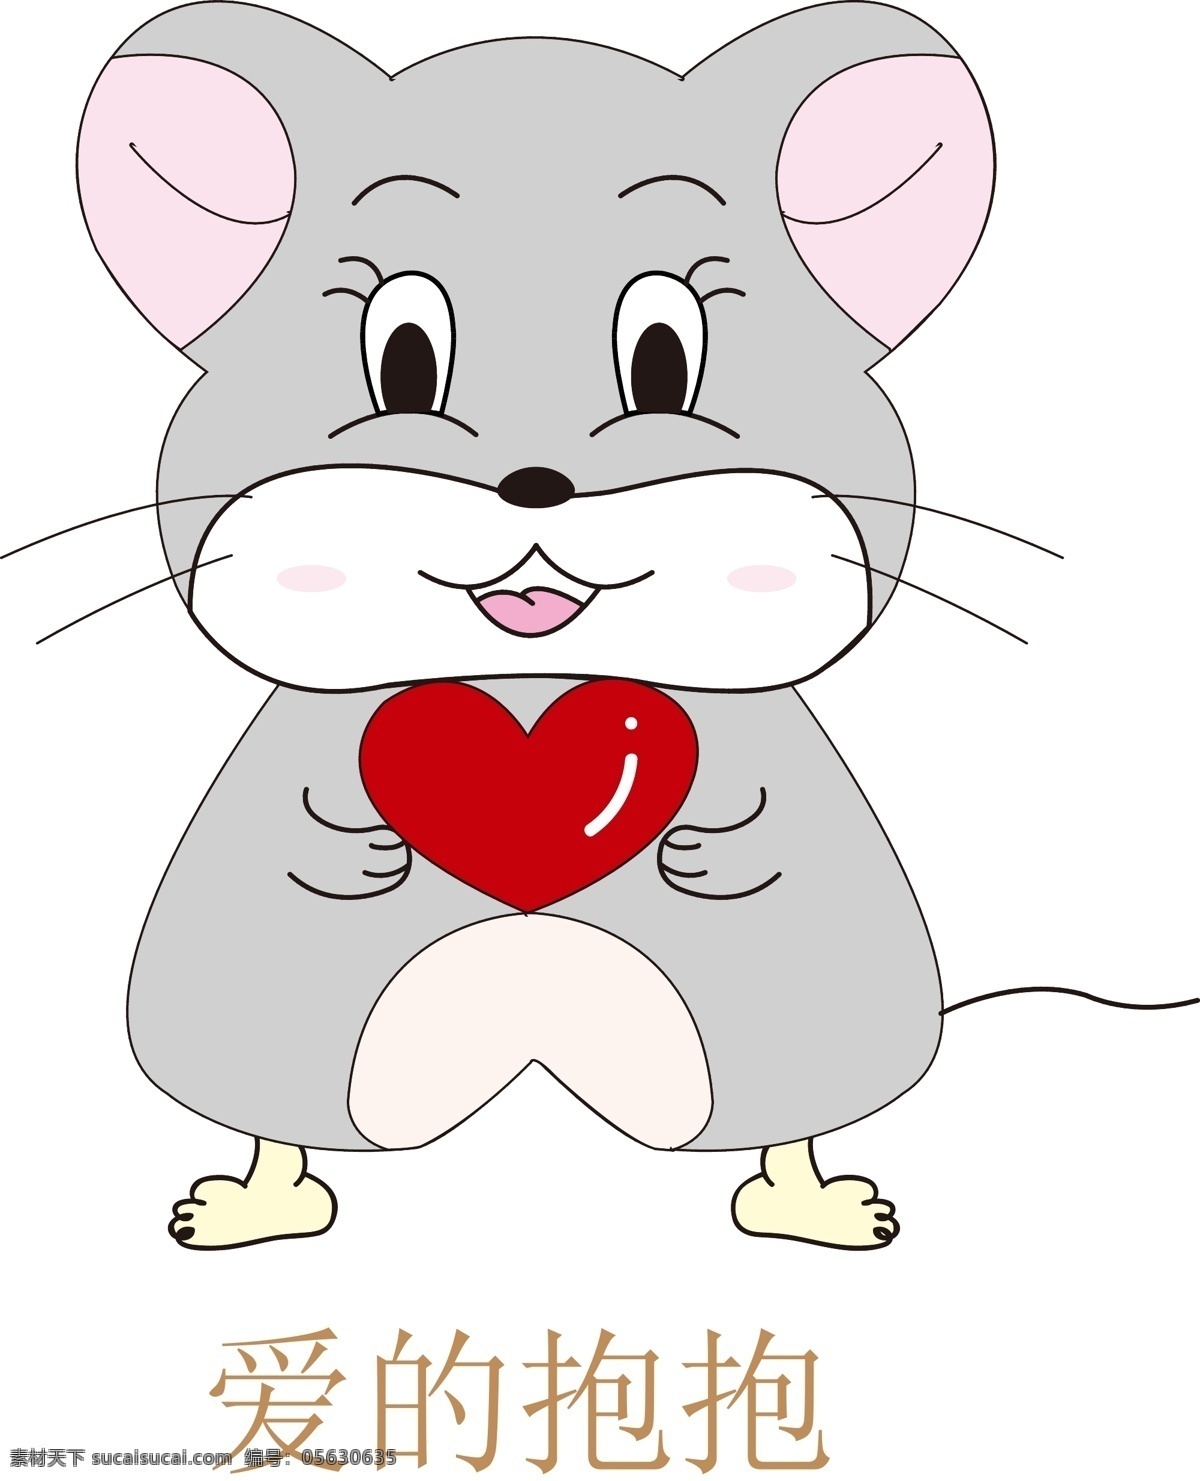 小老鼠 爱心 灰鼠 小鼠宝 宝宝 动漫动画 动漫人物